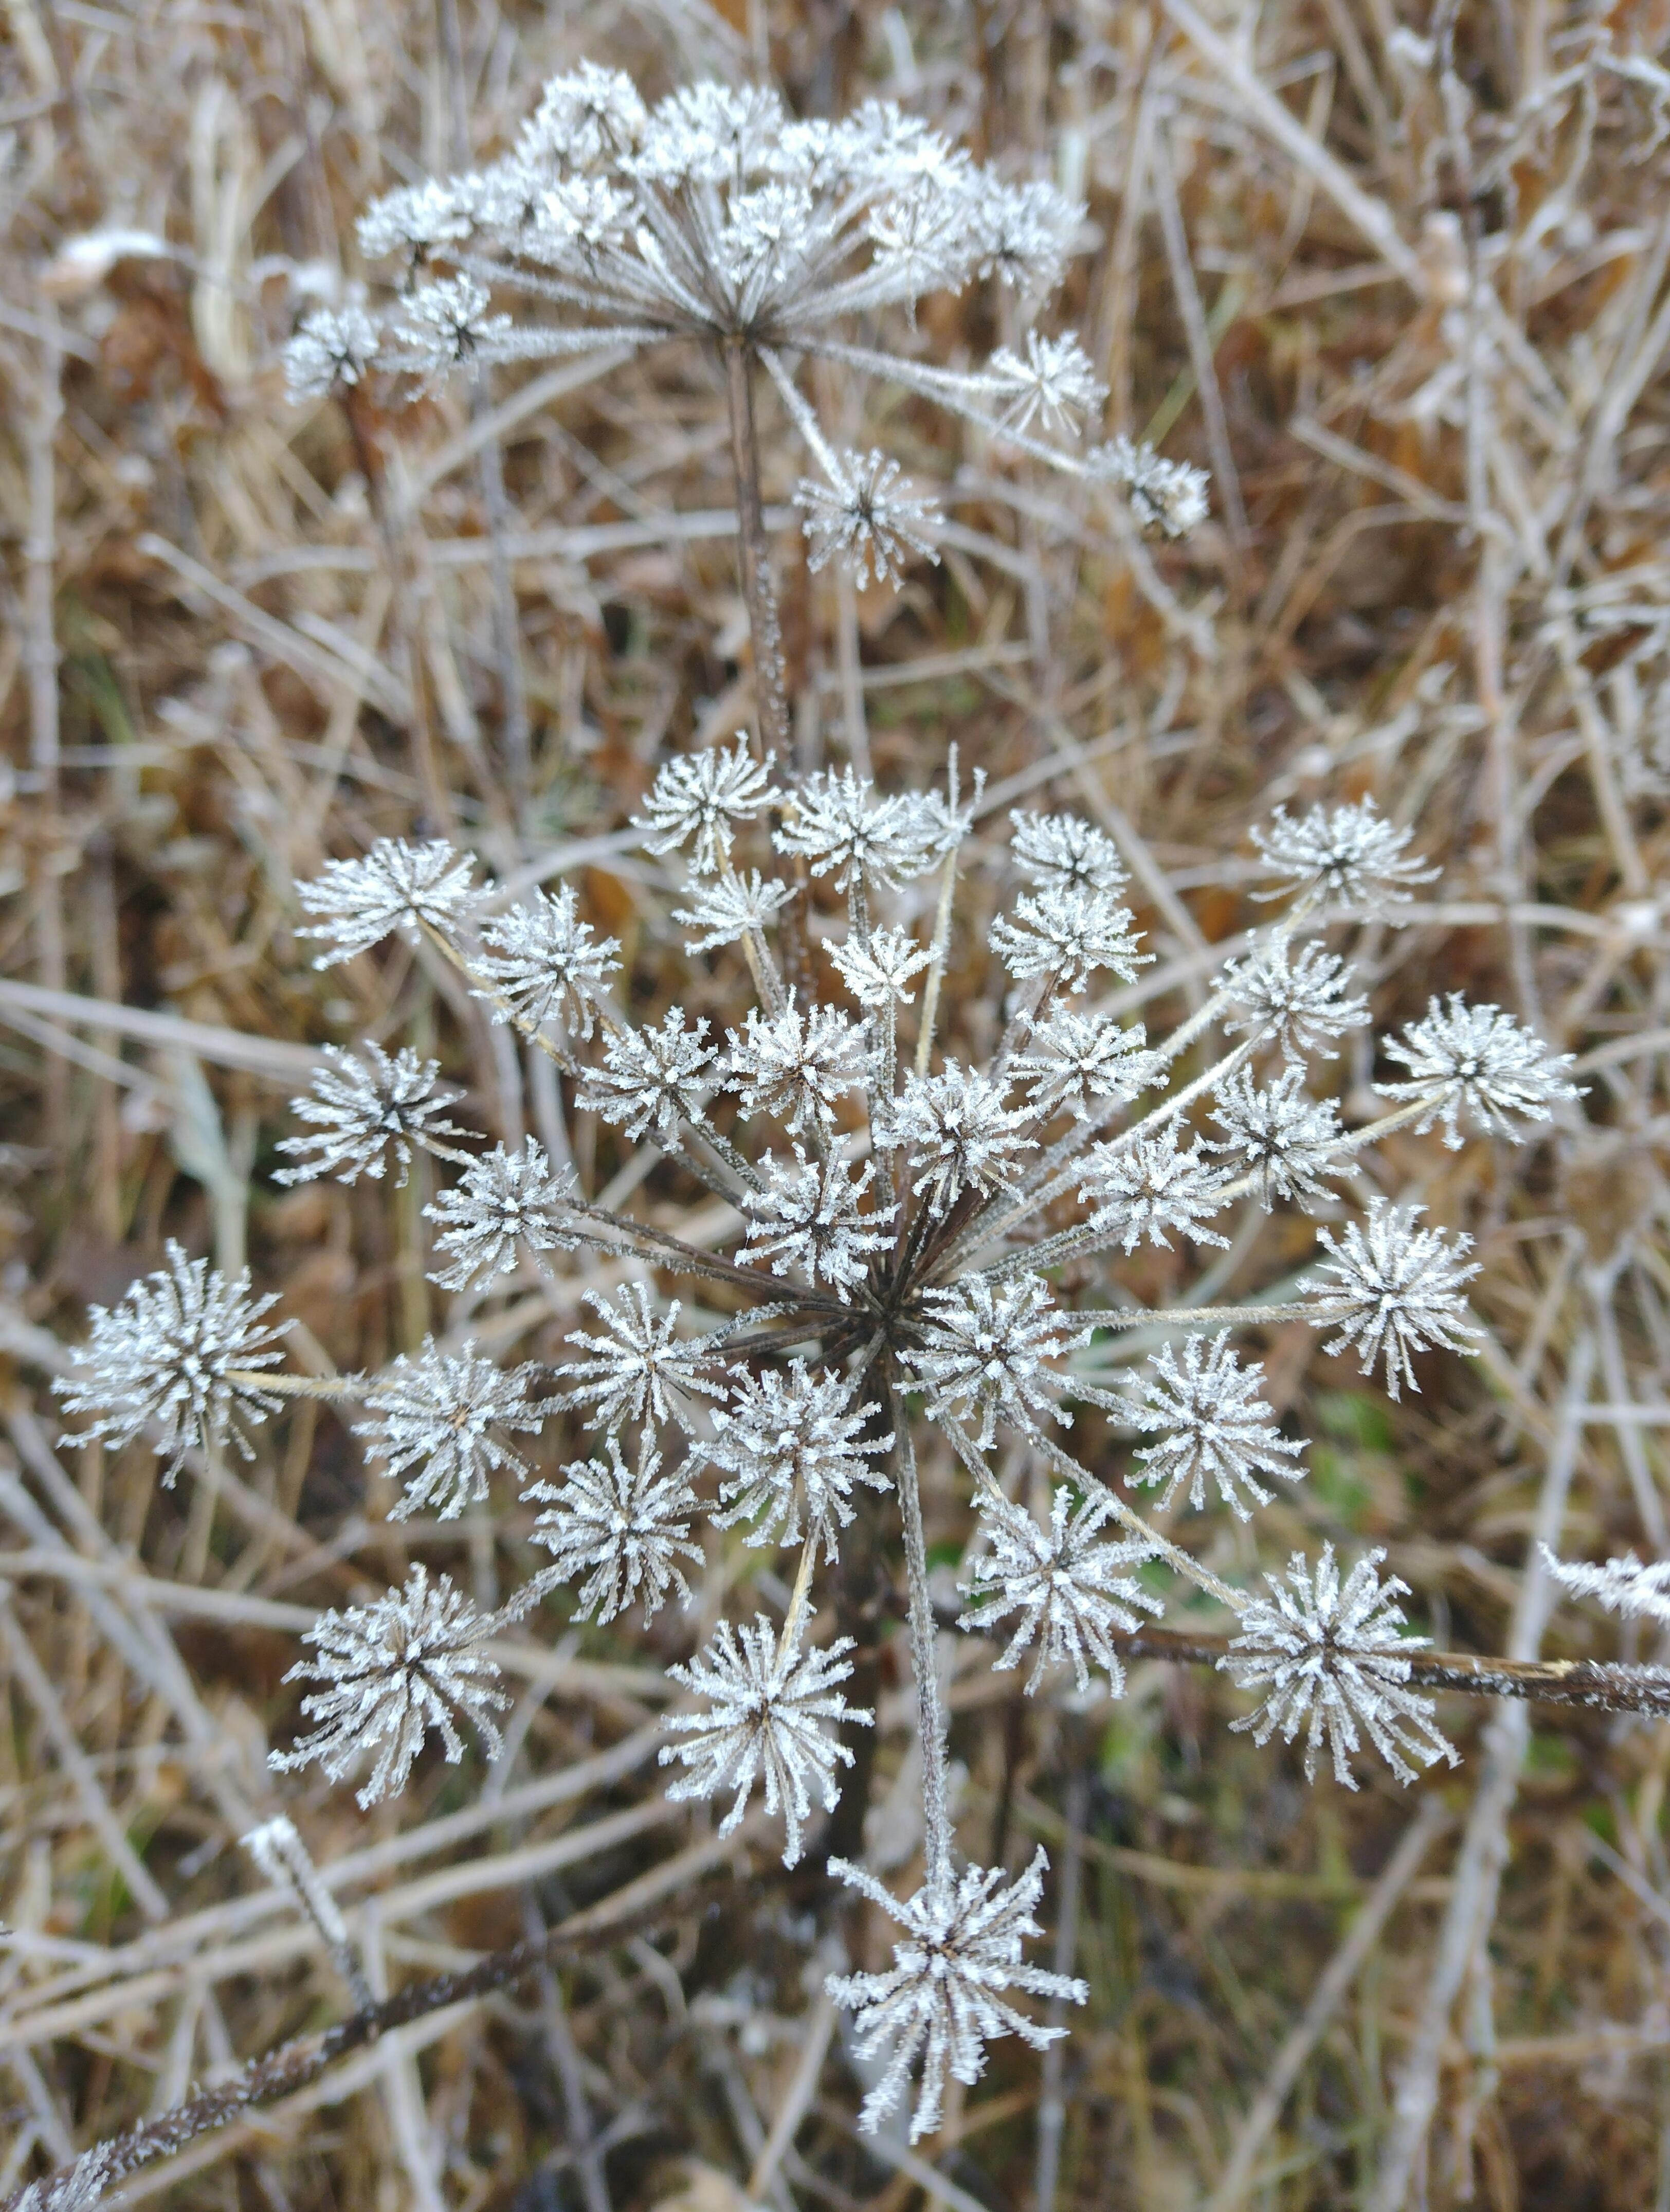 🌟⭐🌟
#frost #trockenpflanzen #winter